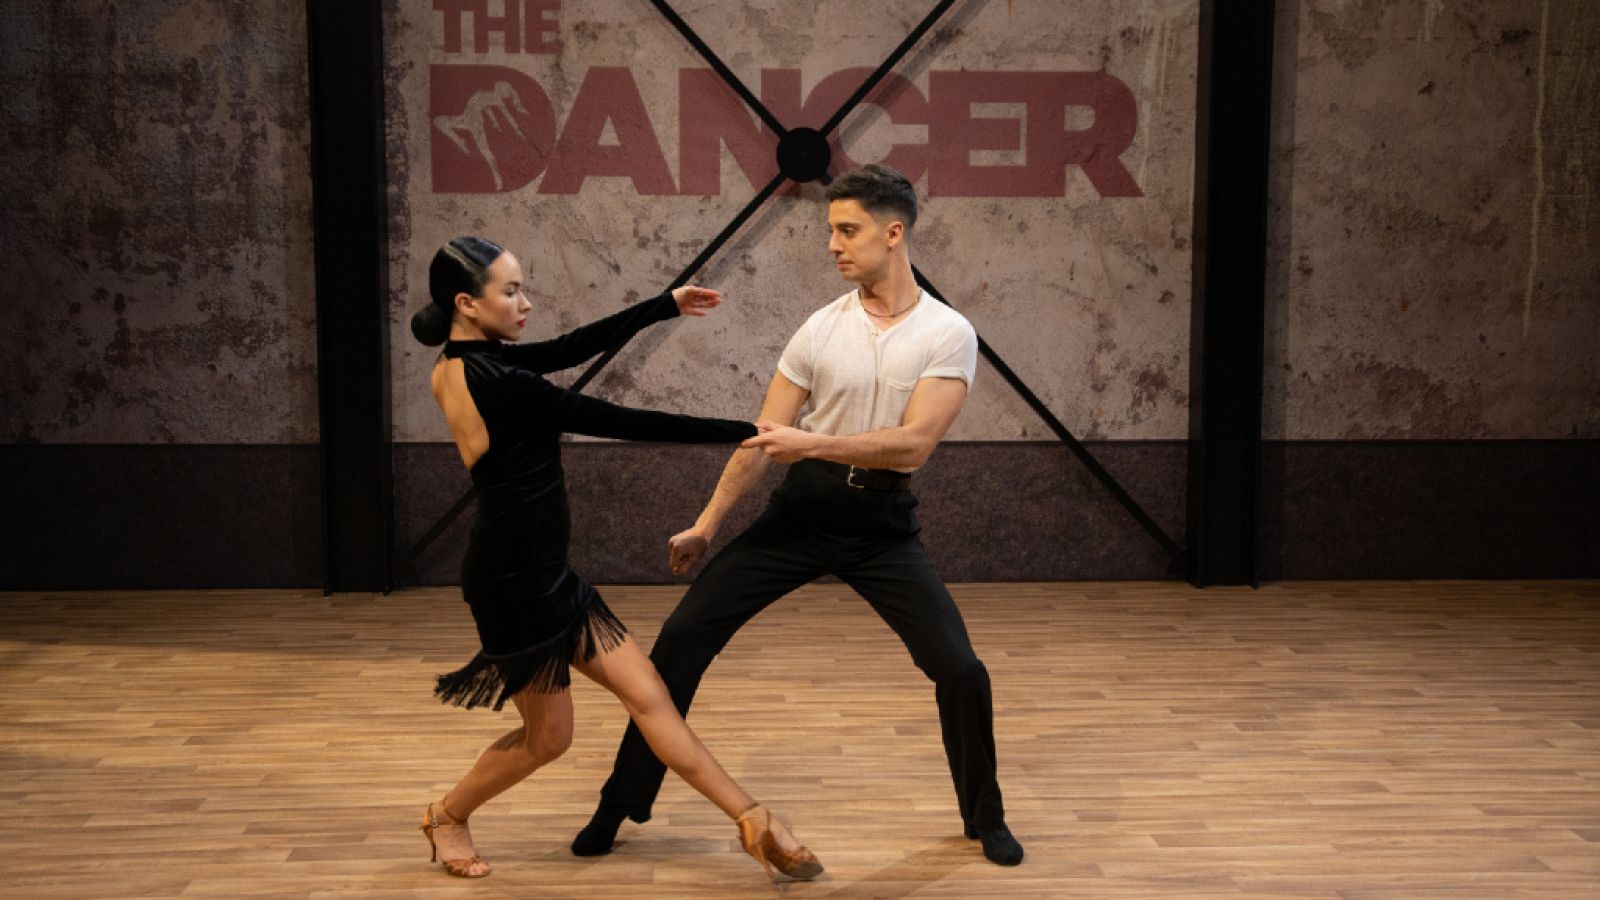 The Dancer - Actuación completa de Aleix&Sara